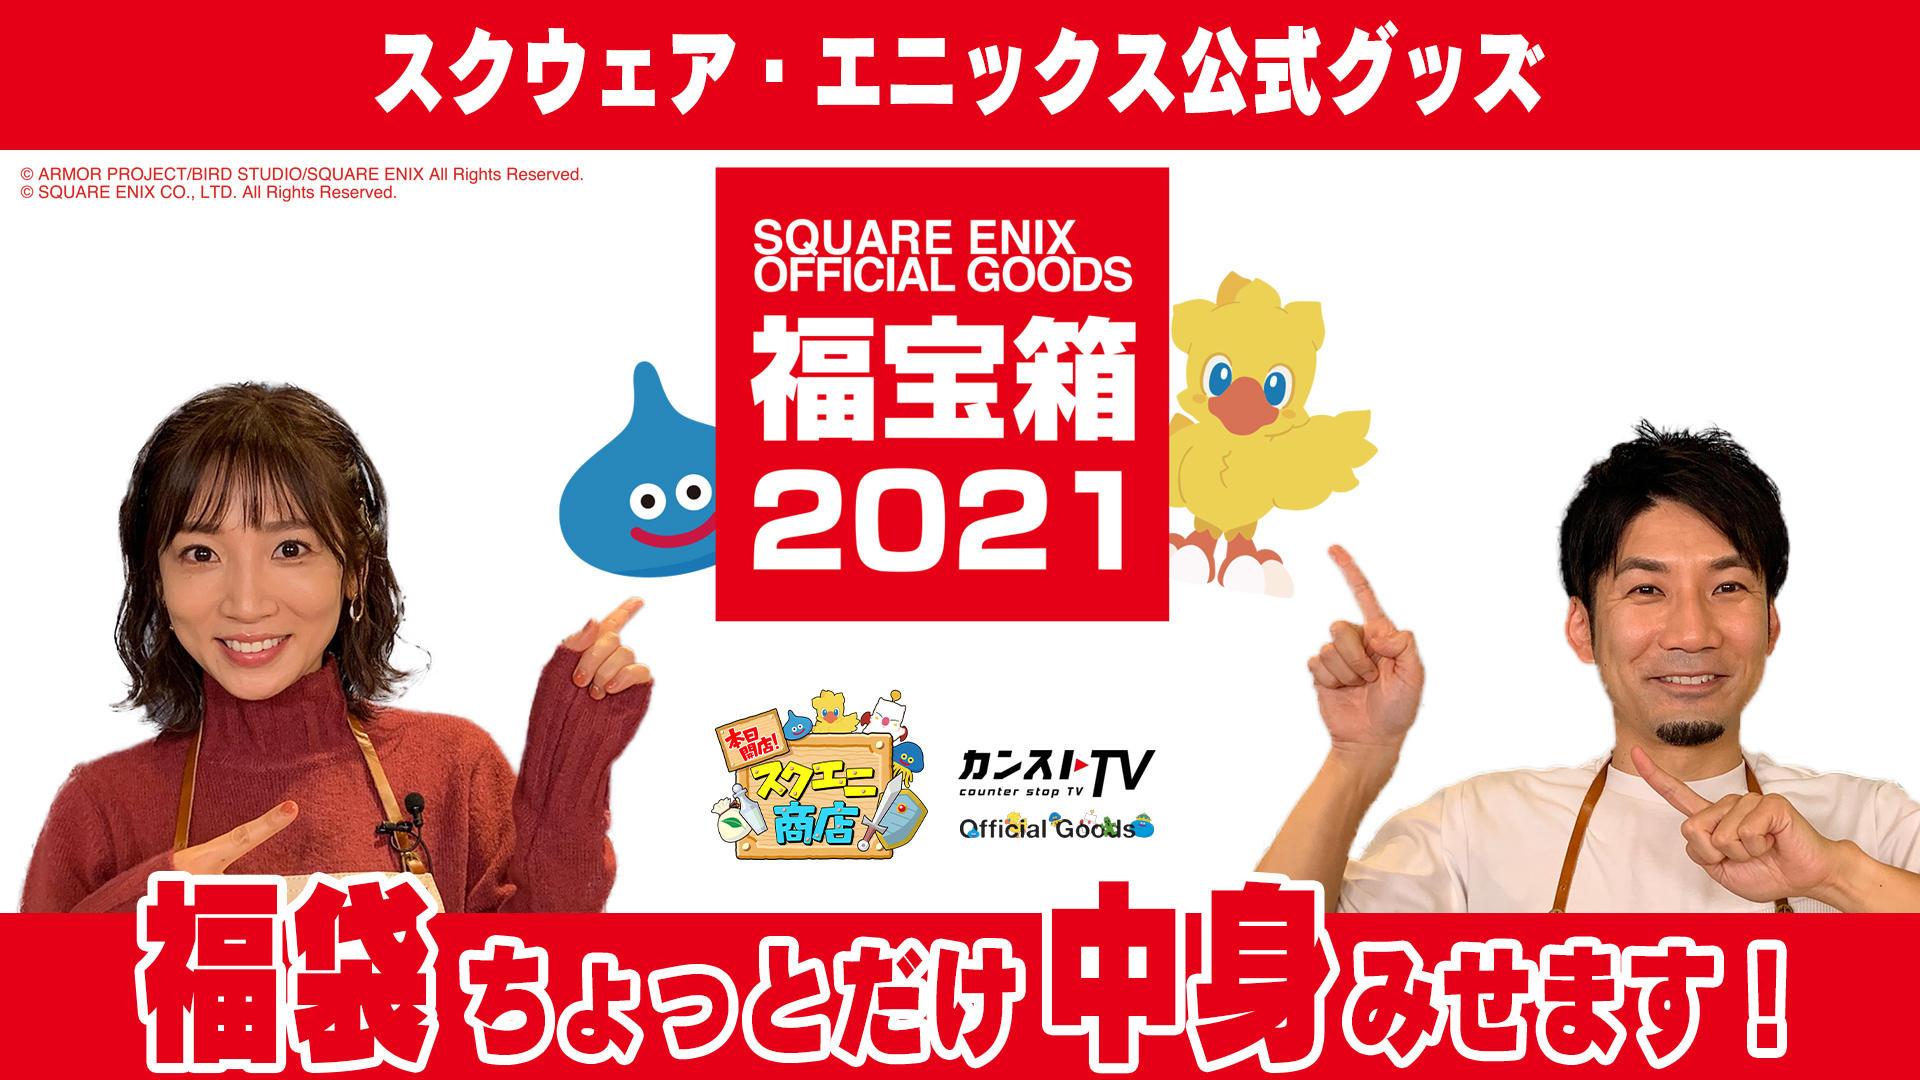 Official Goods Square Enix Square Enix